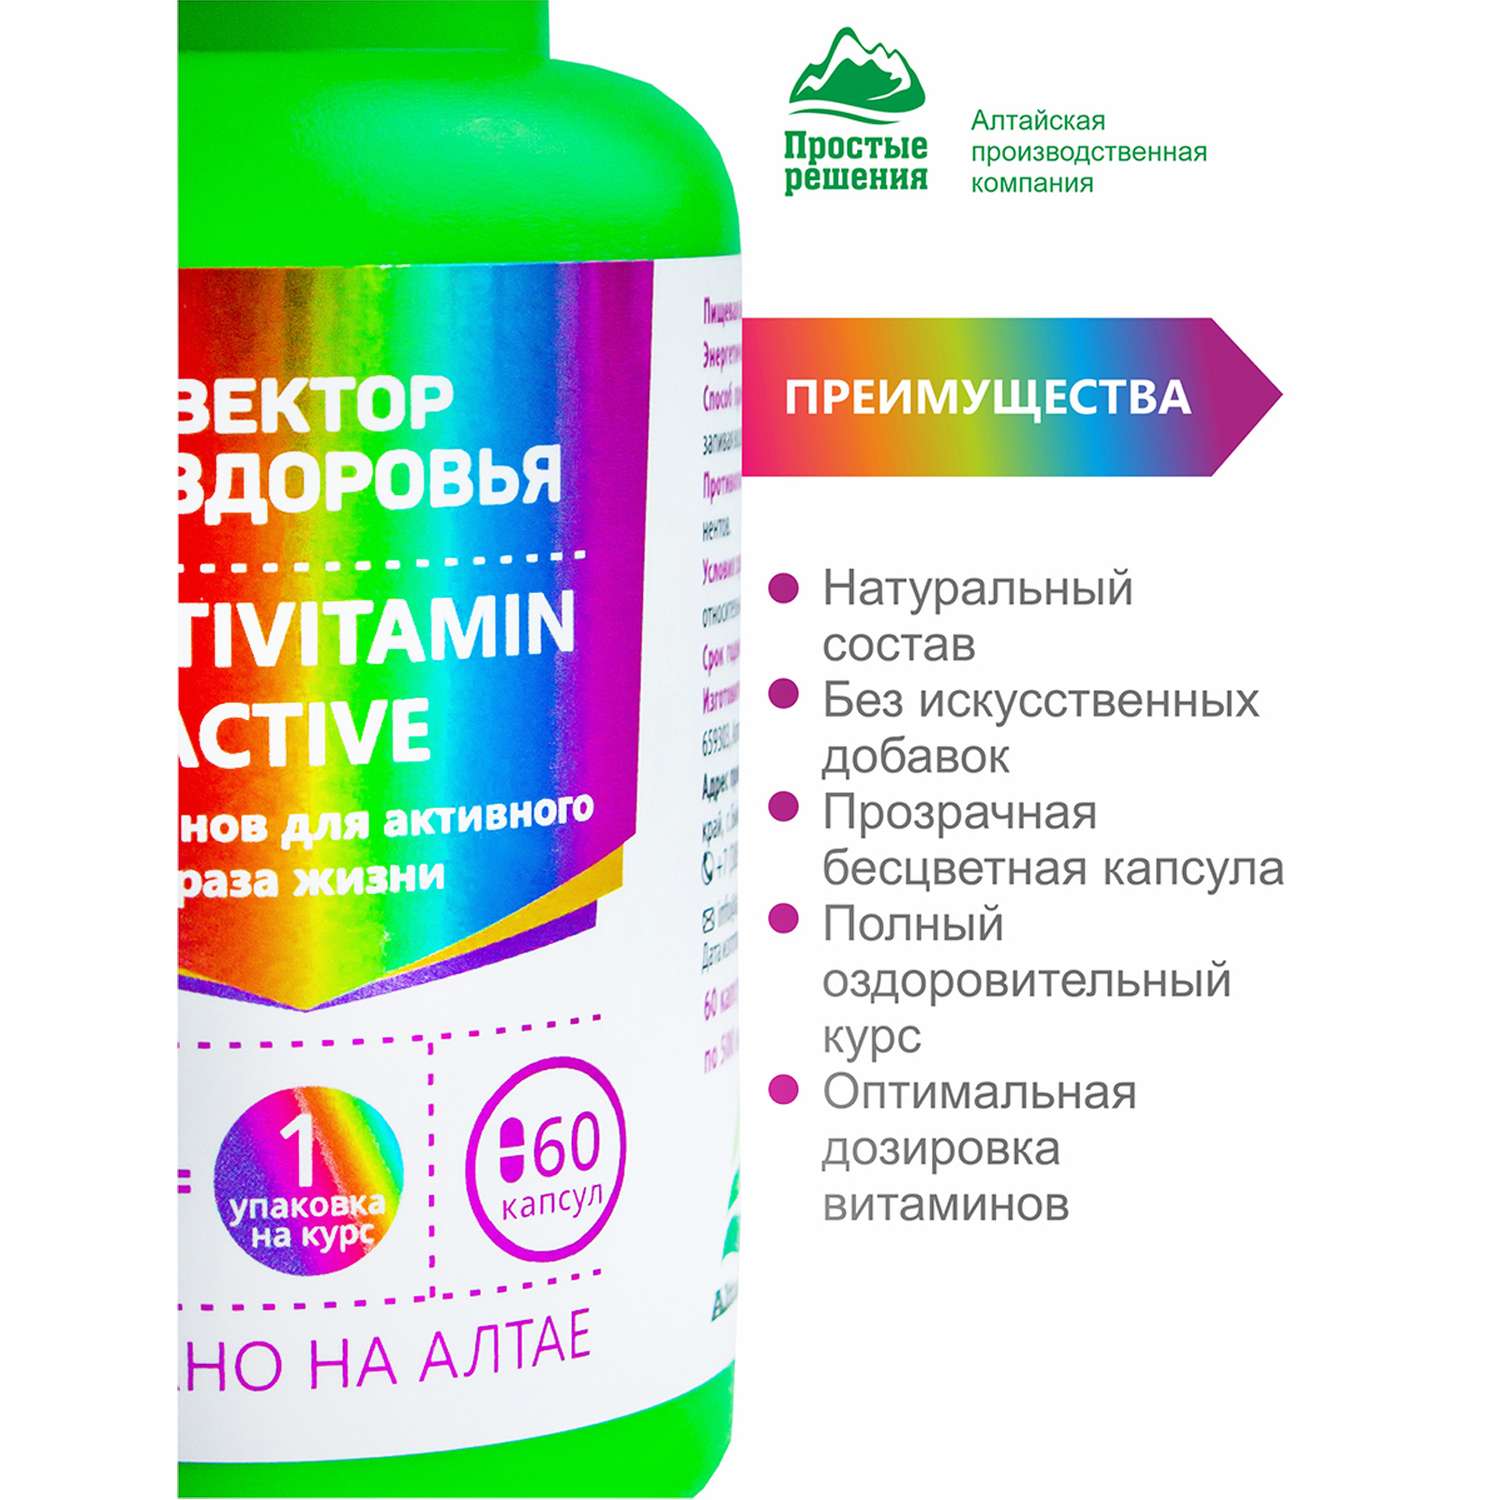 Концетраты пищевые Алтайские традиции Комплекс Мультивитамин Актив 60 капсул - фото 4